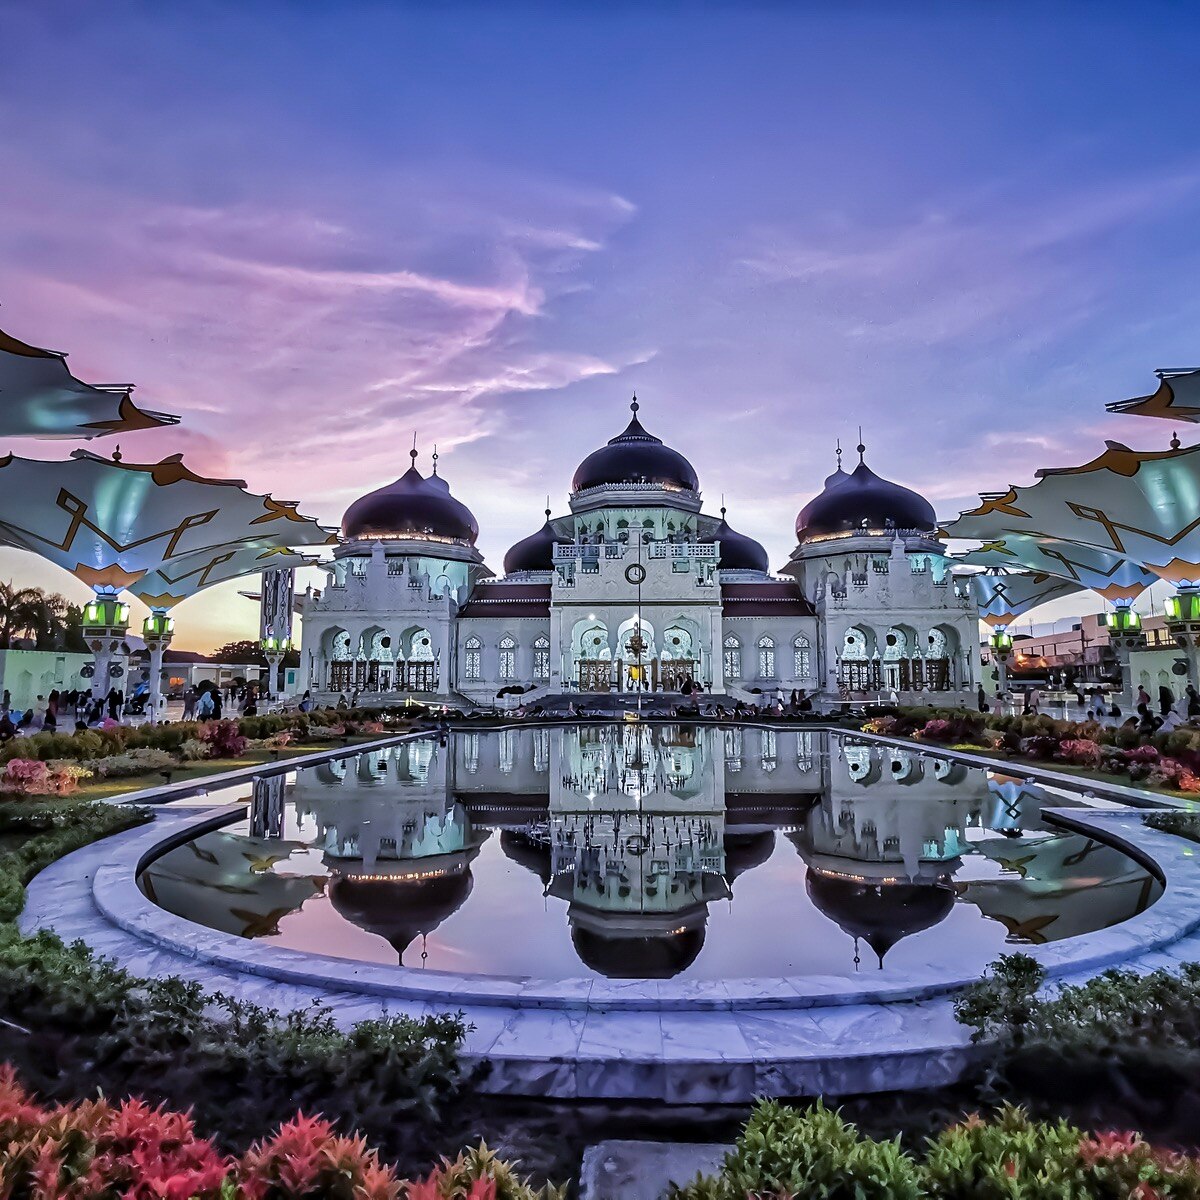 Banda Aceh: Spiritual Culture in Magnificent Land